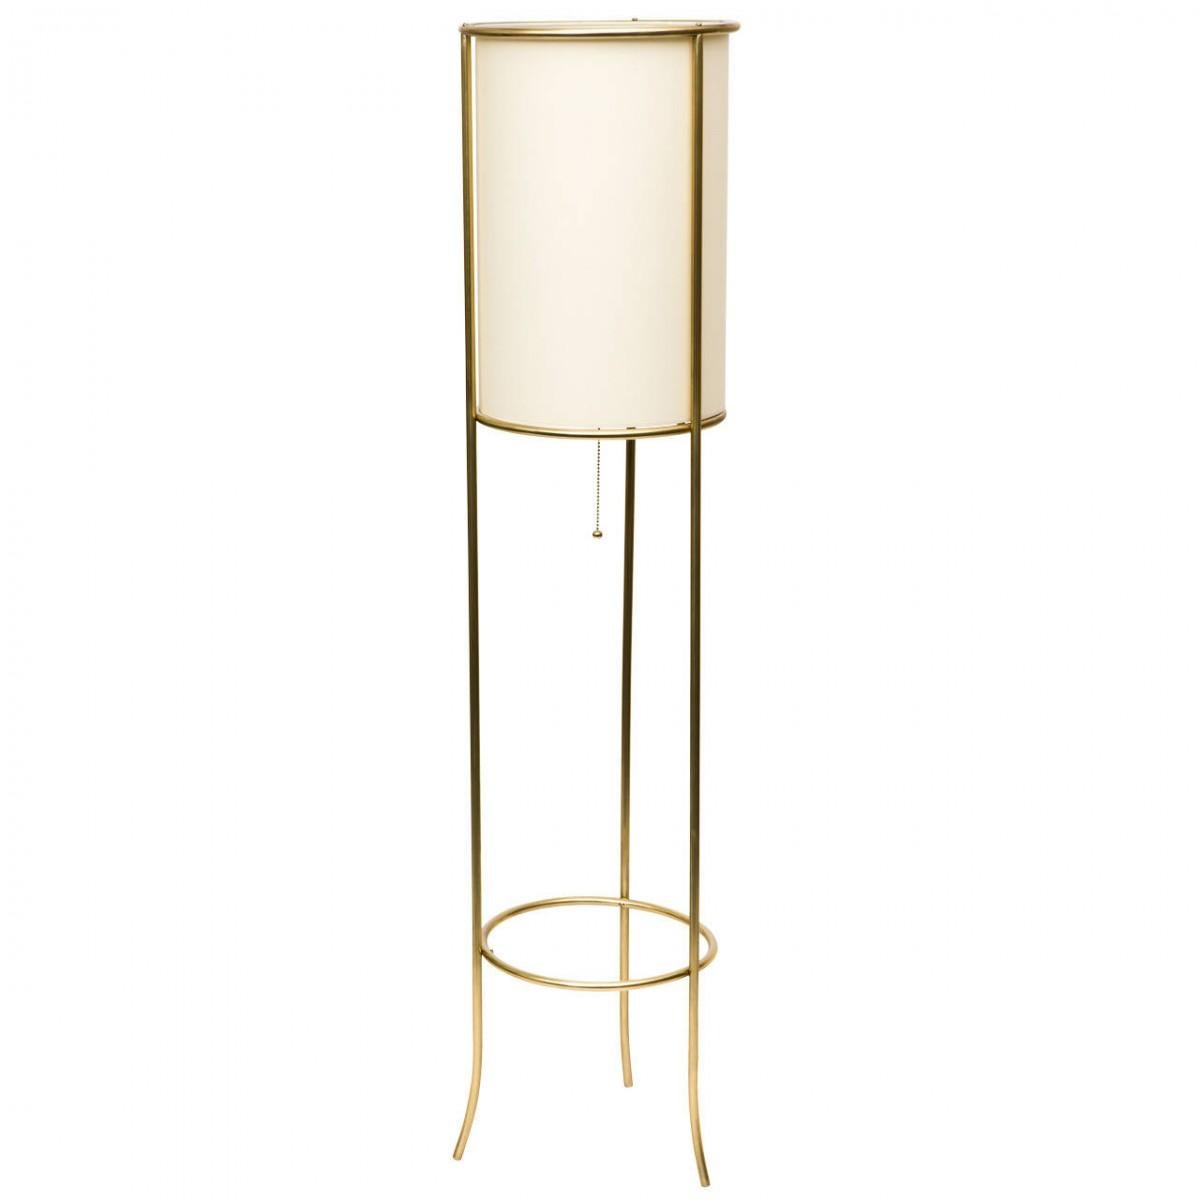 Mid-Century Modern Pair of Tripod Brass Floor Lamps in the Manner of T.H. Robsjohn-Gibbings For Sale